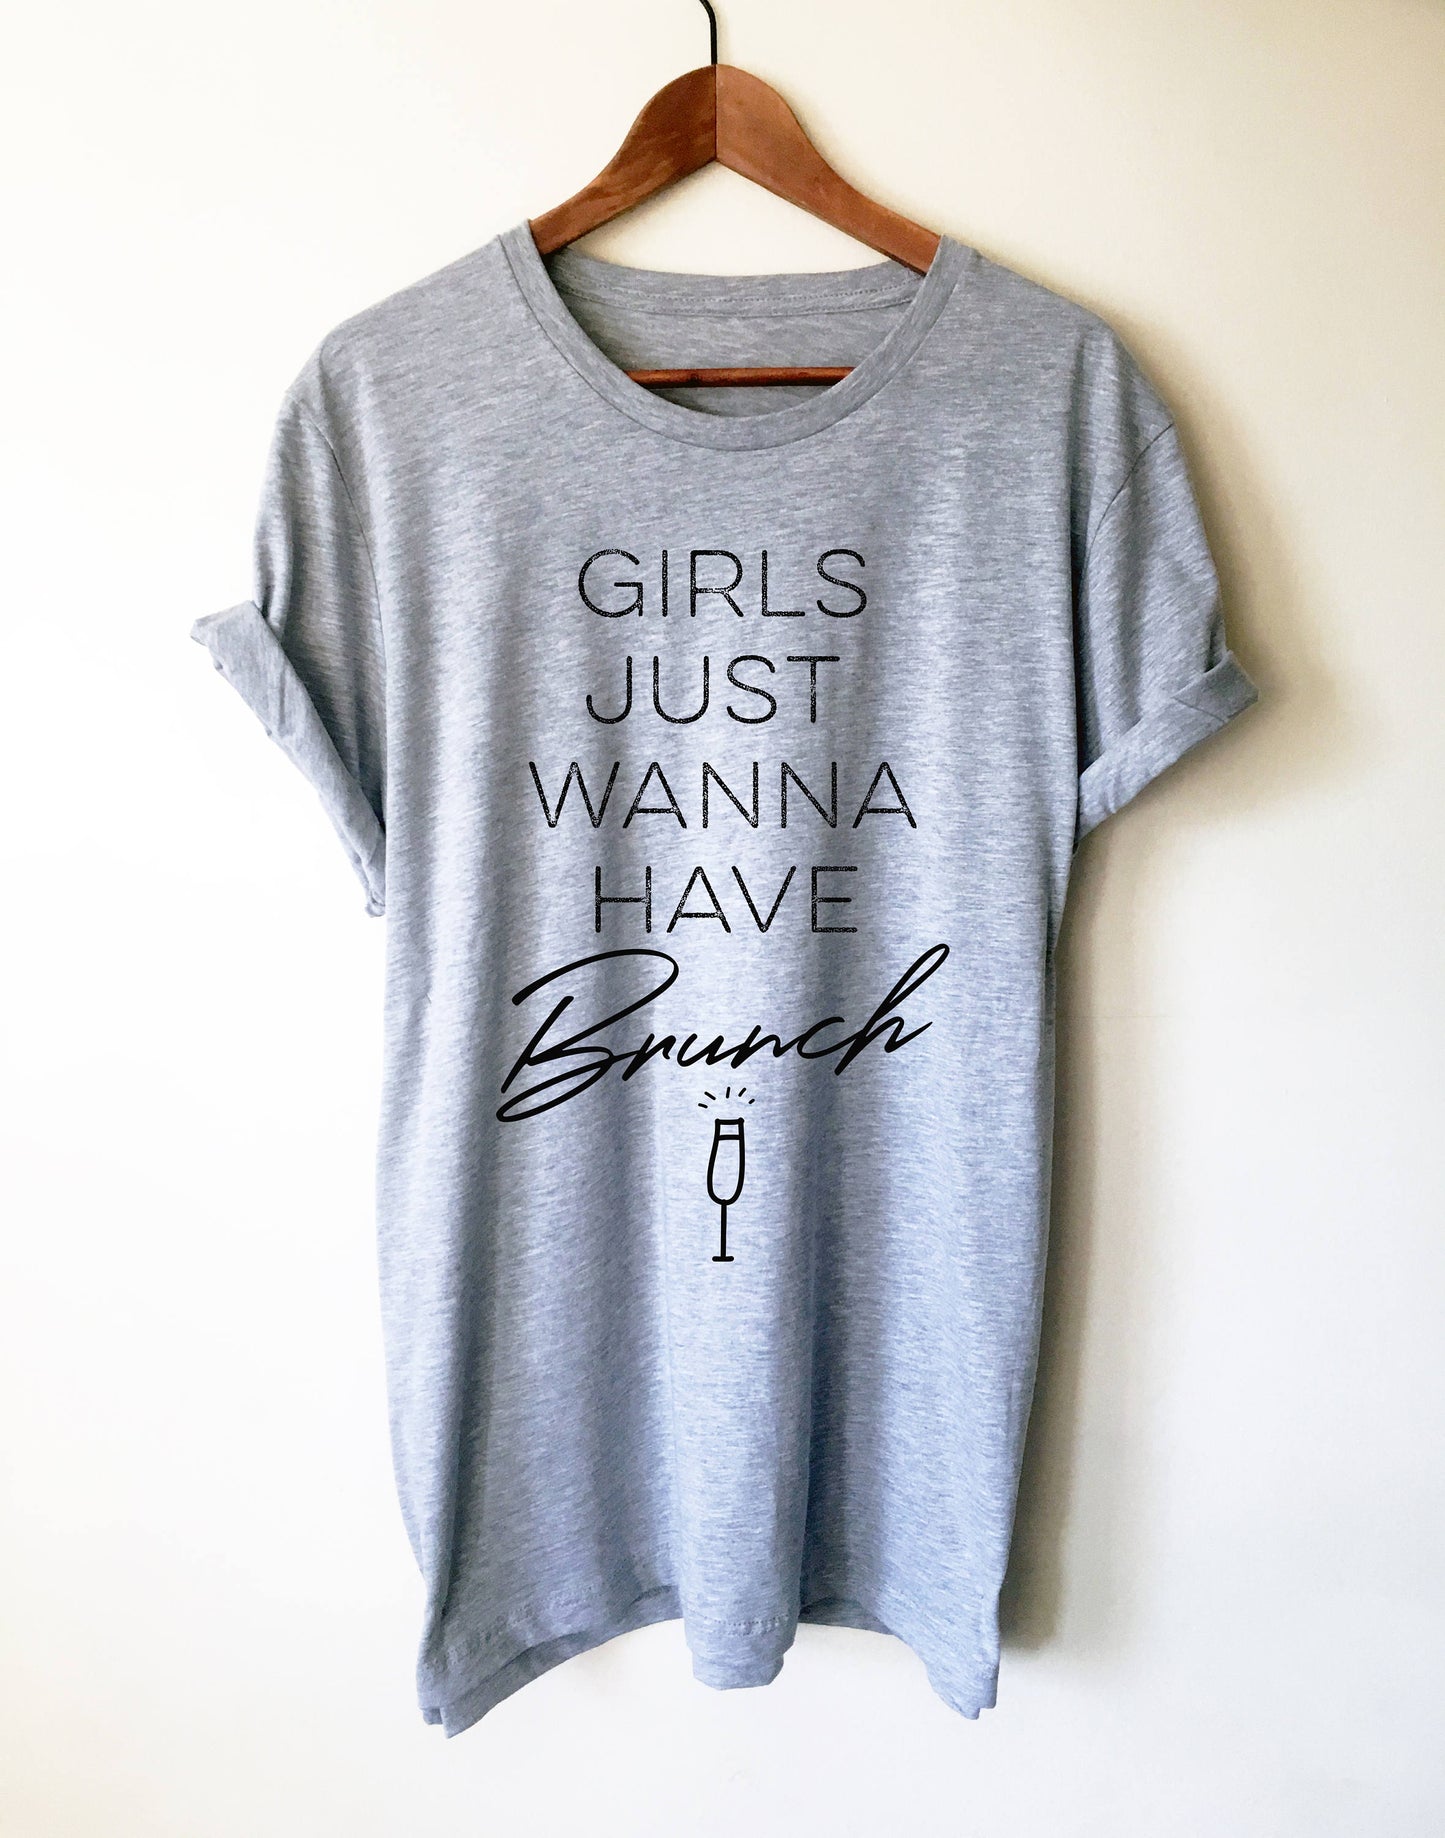 Girls Just Wanna Have Brunch Unisex Shirt - Brunch shirt | Sunday brunch shirt | Brunch and bubbly | Funny brunch shirt | Breakfast shirt